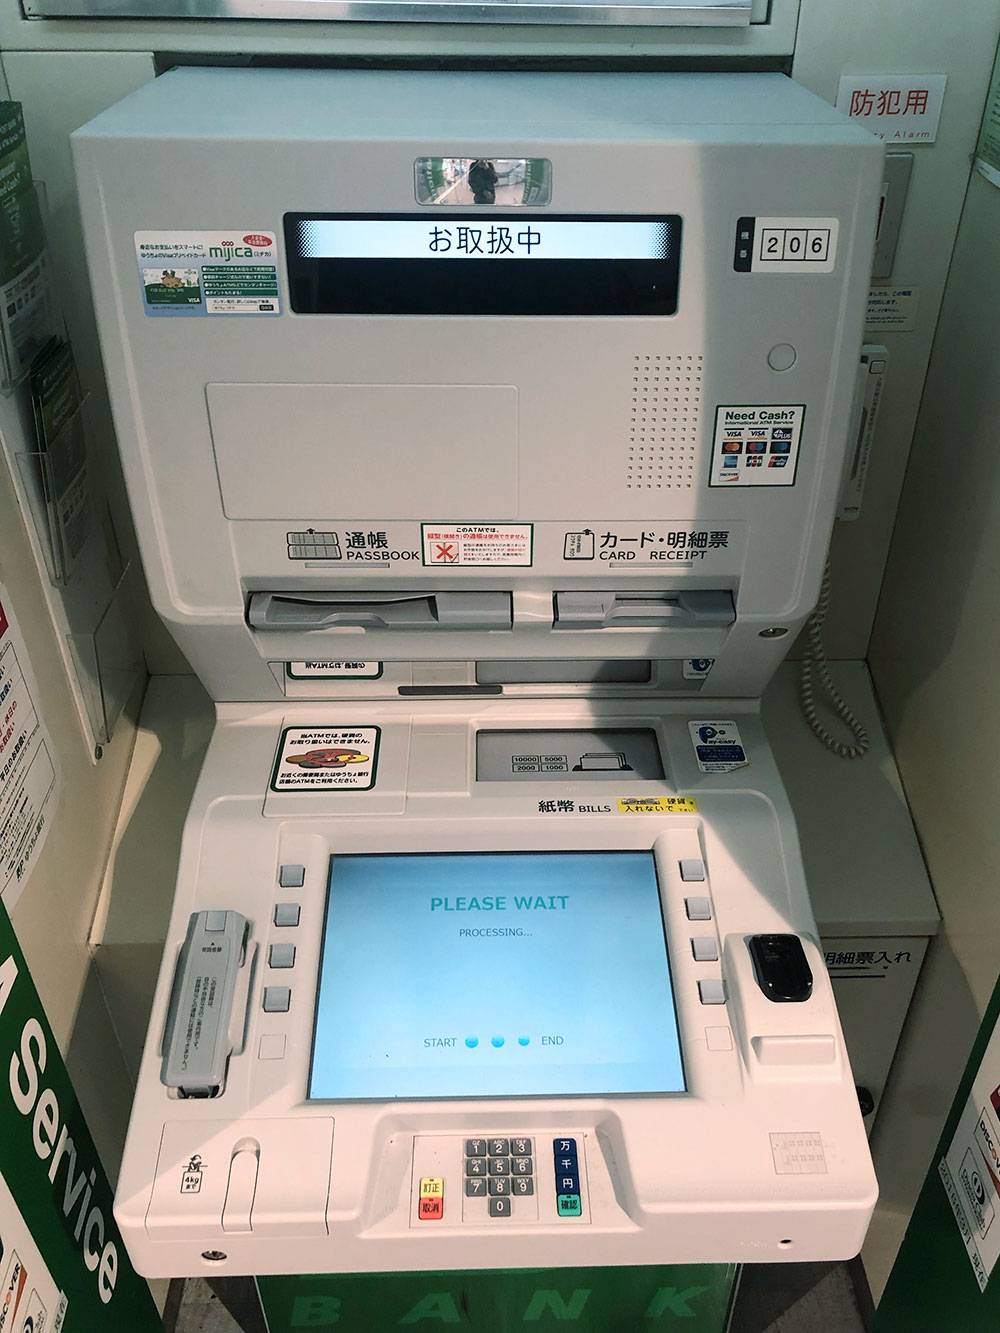 Этот банкомат банка Japan Post — первое, с чем я столкнулся в Японии. Уже в тот момент я понял, что в следующие 11 дней мне придется непросто